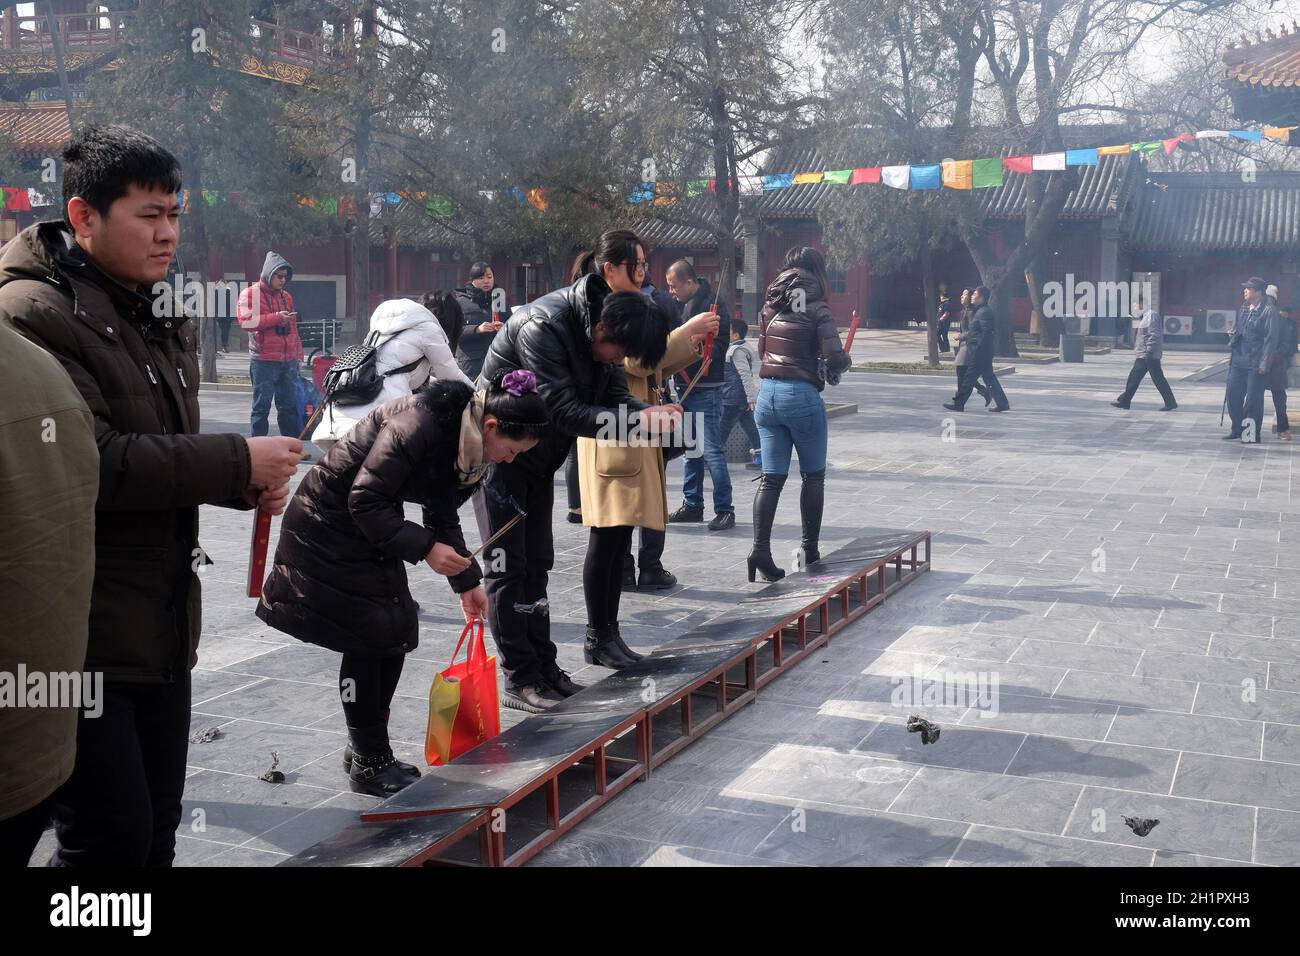 Les adorateurs qui tiennent des bâtonnets d'encens prient au Temple Yonghegong Lama à Beijing, en Chine Banque D'Images